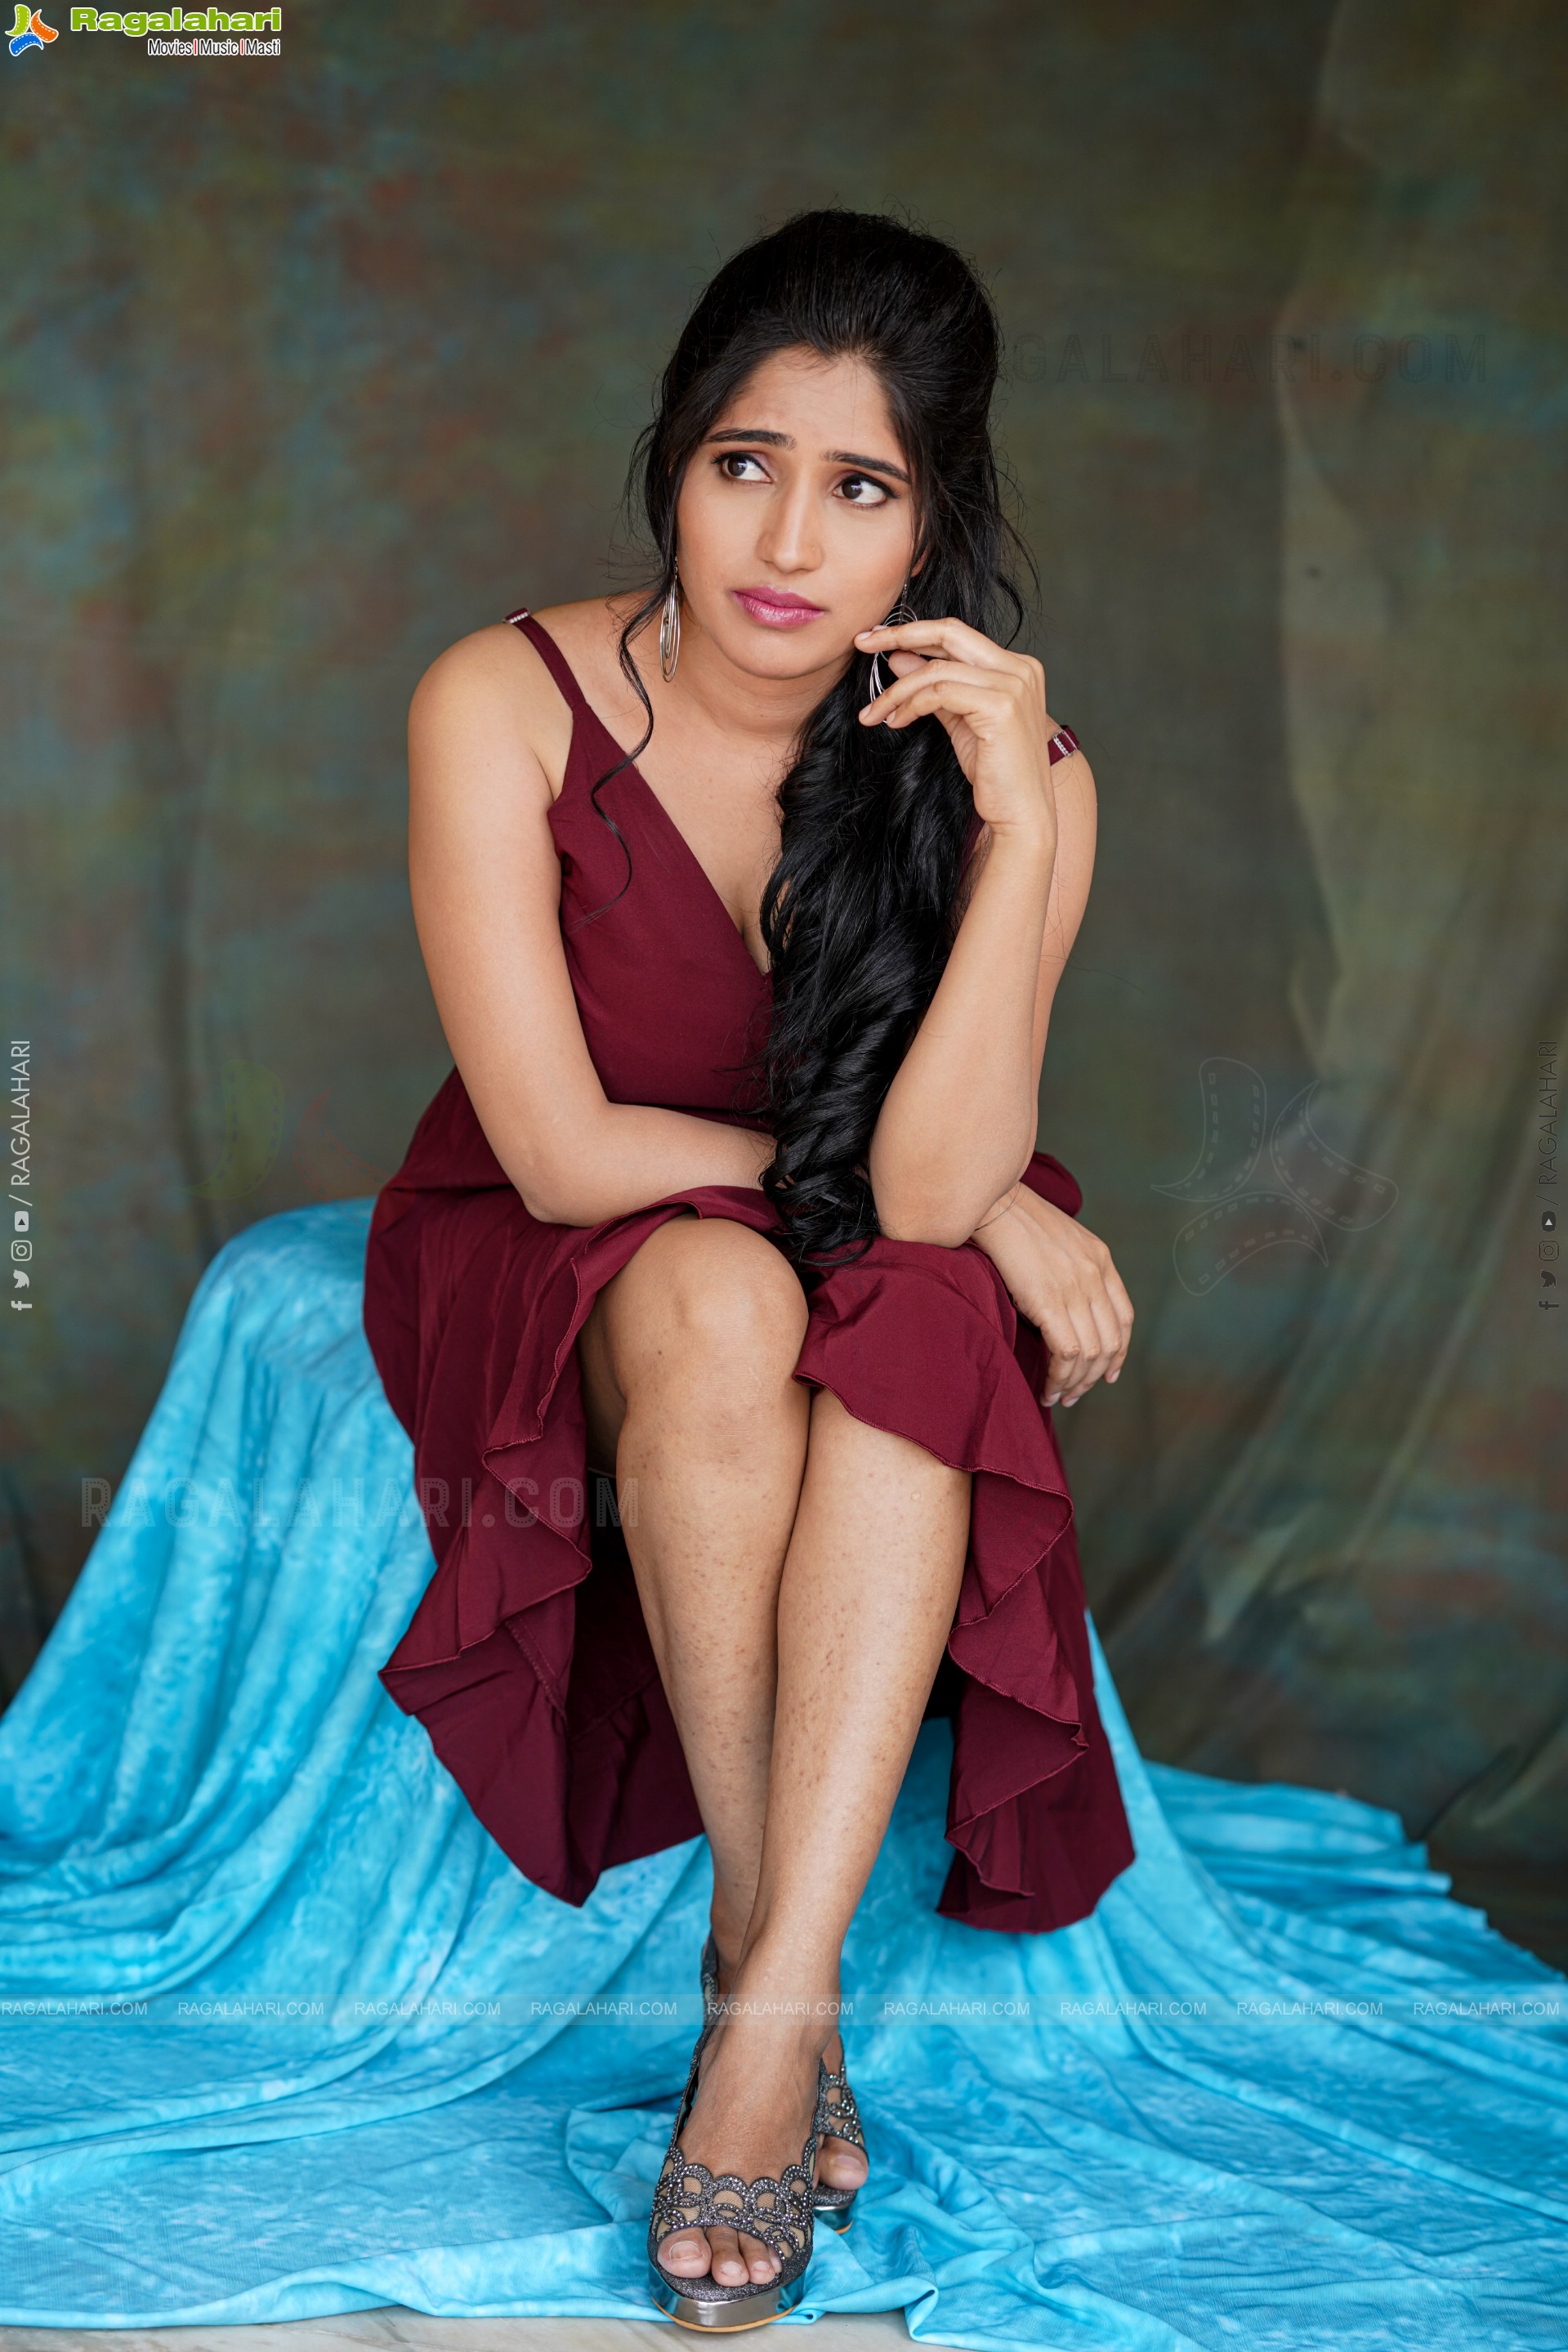 Ayesha in Maroon Ruffle Hem Dress, Exclusive Photoshoot